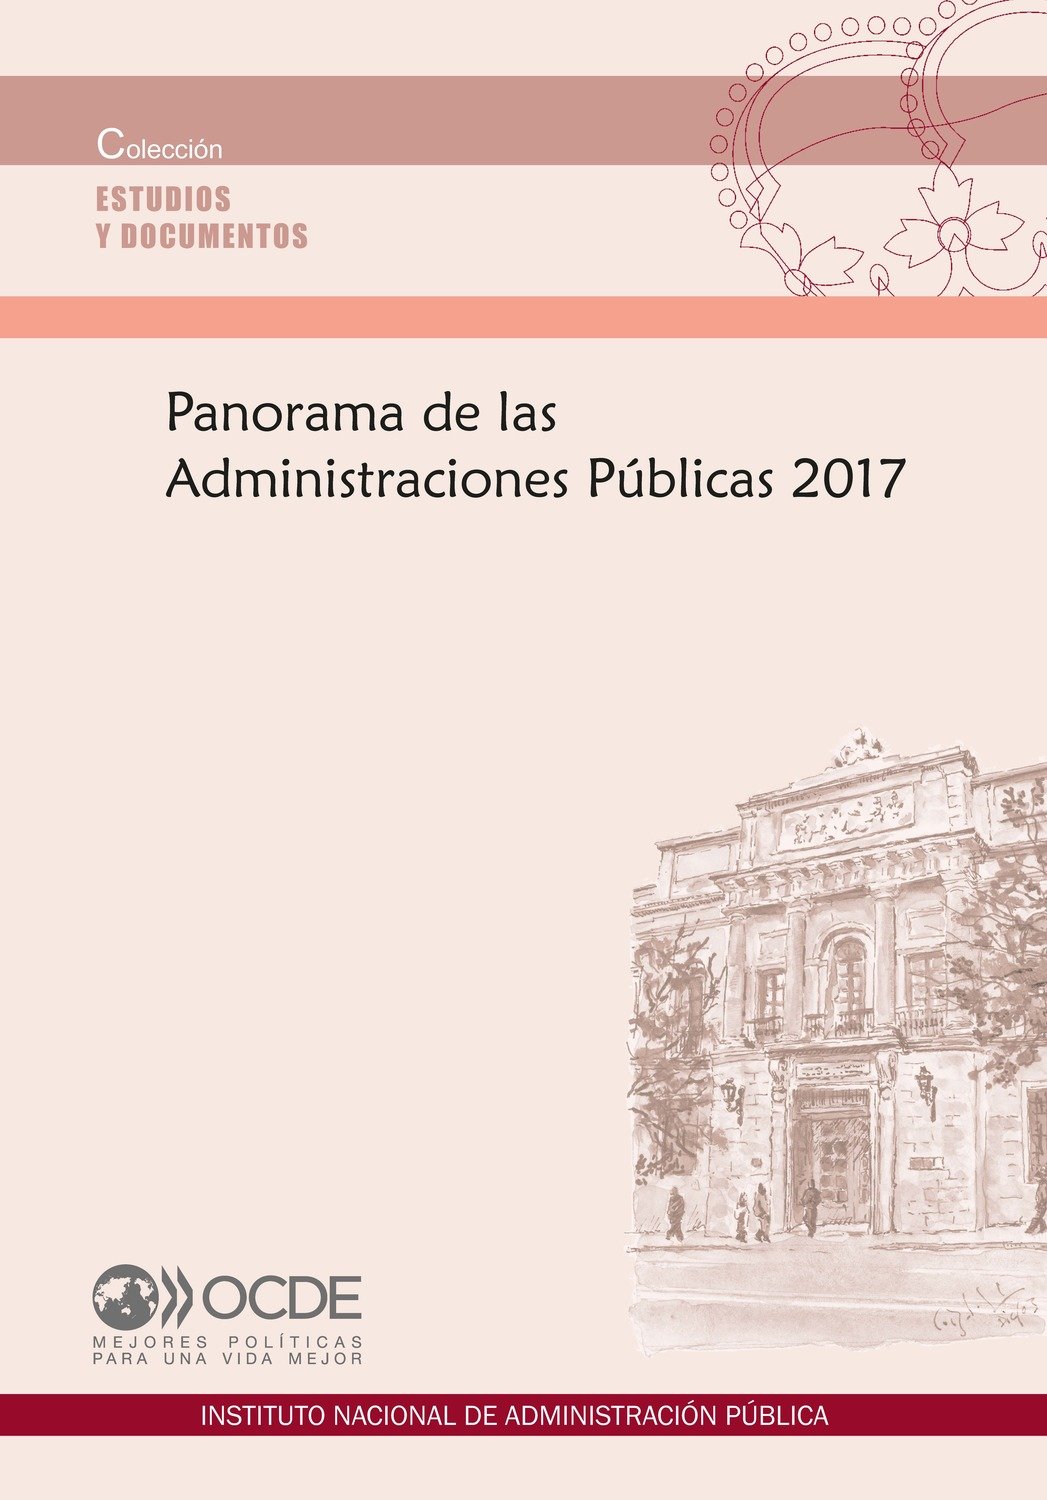 Panorama de las Administraciones Públicas de 2017